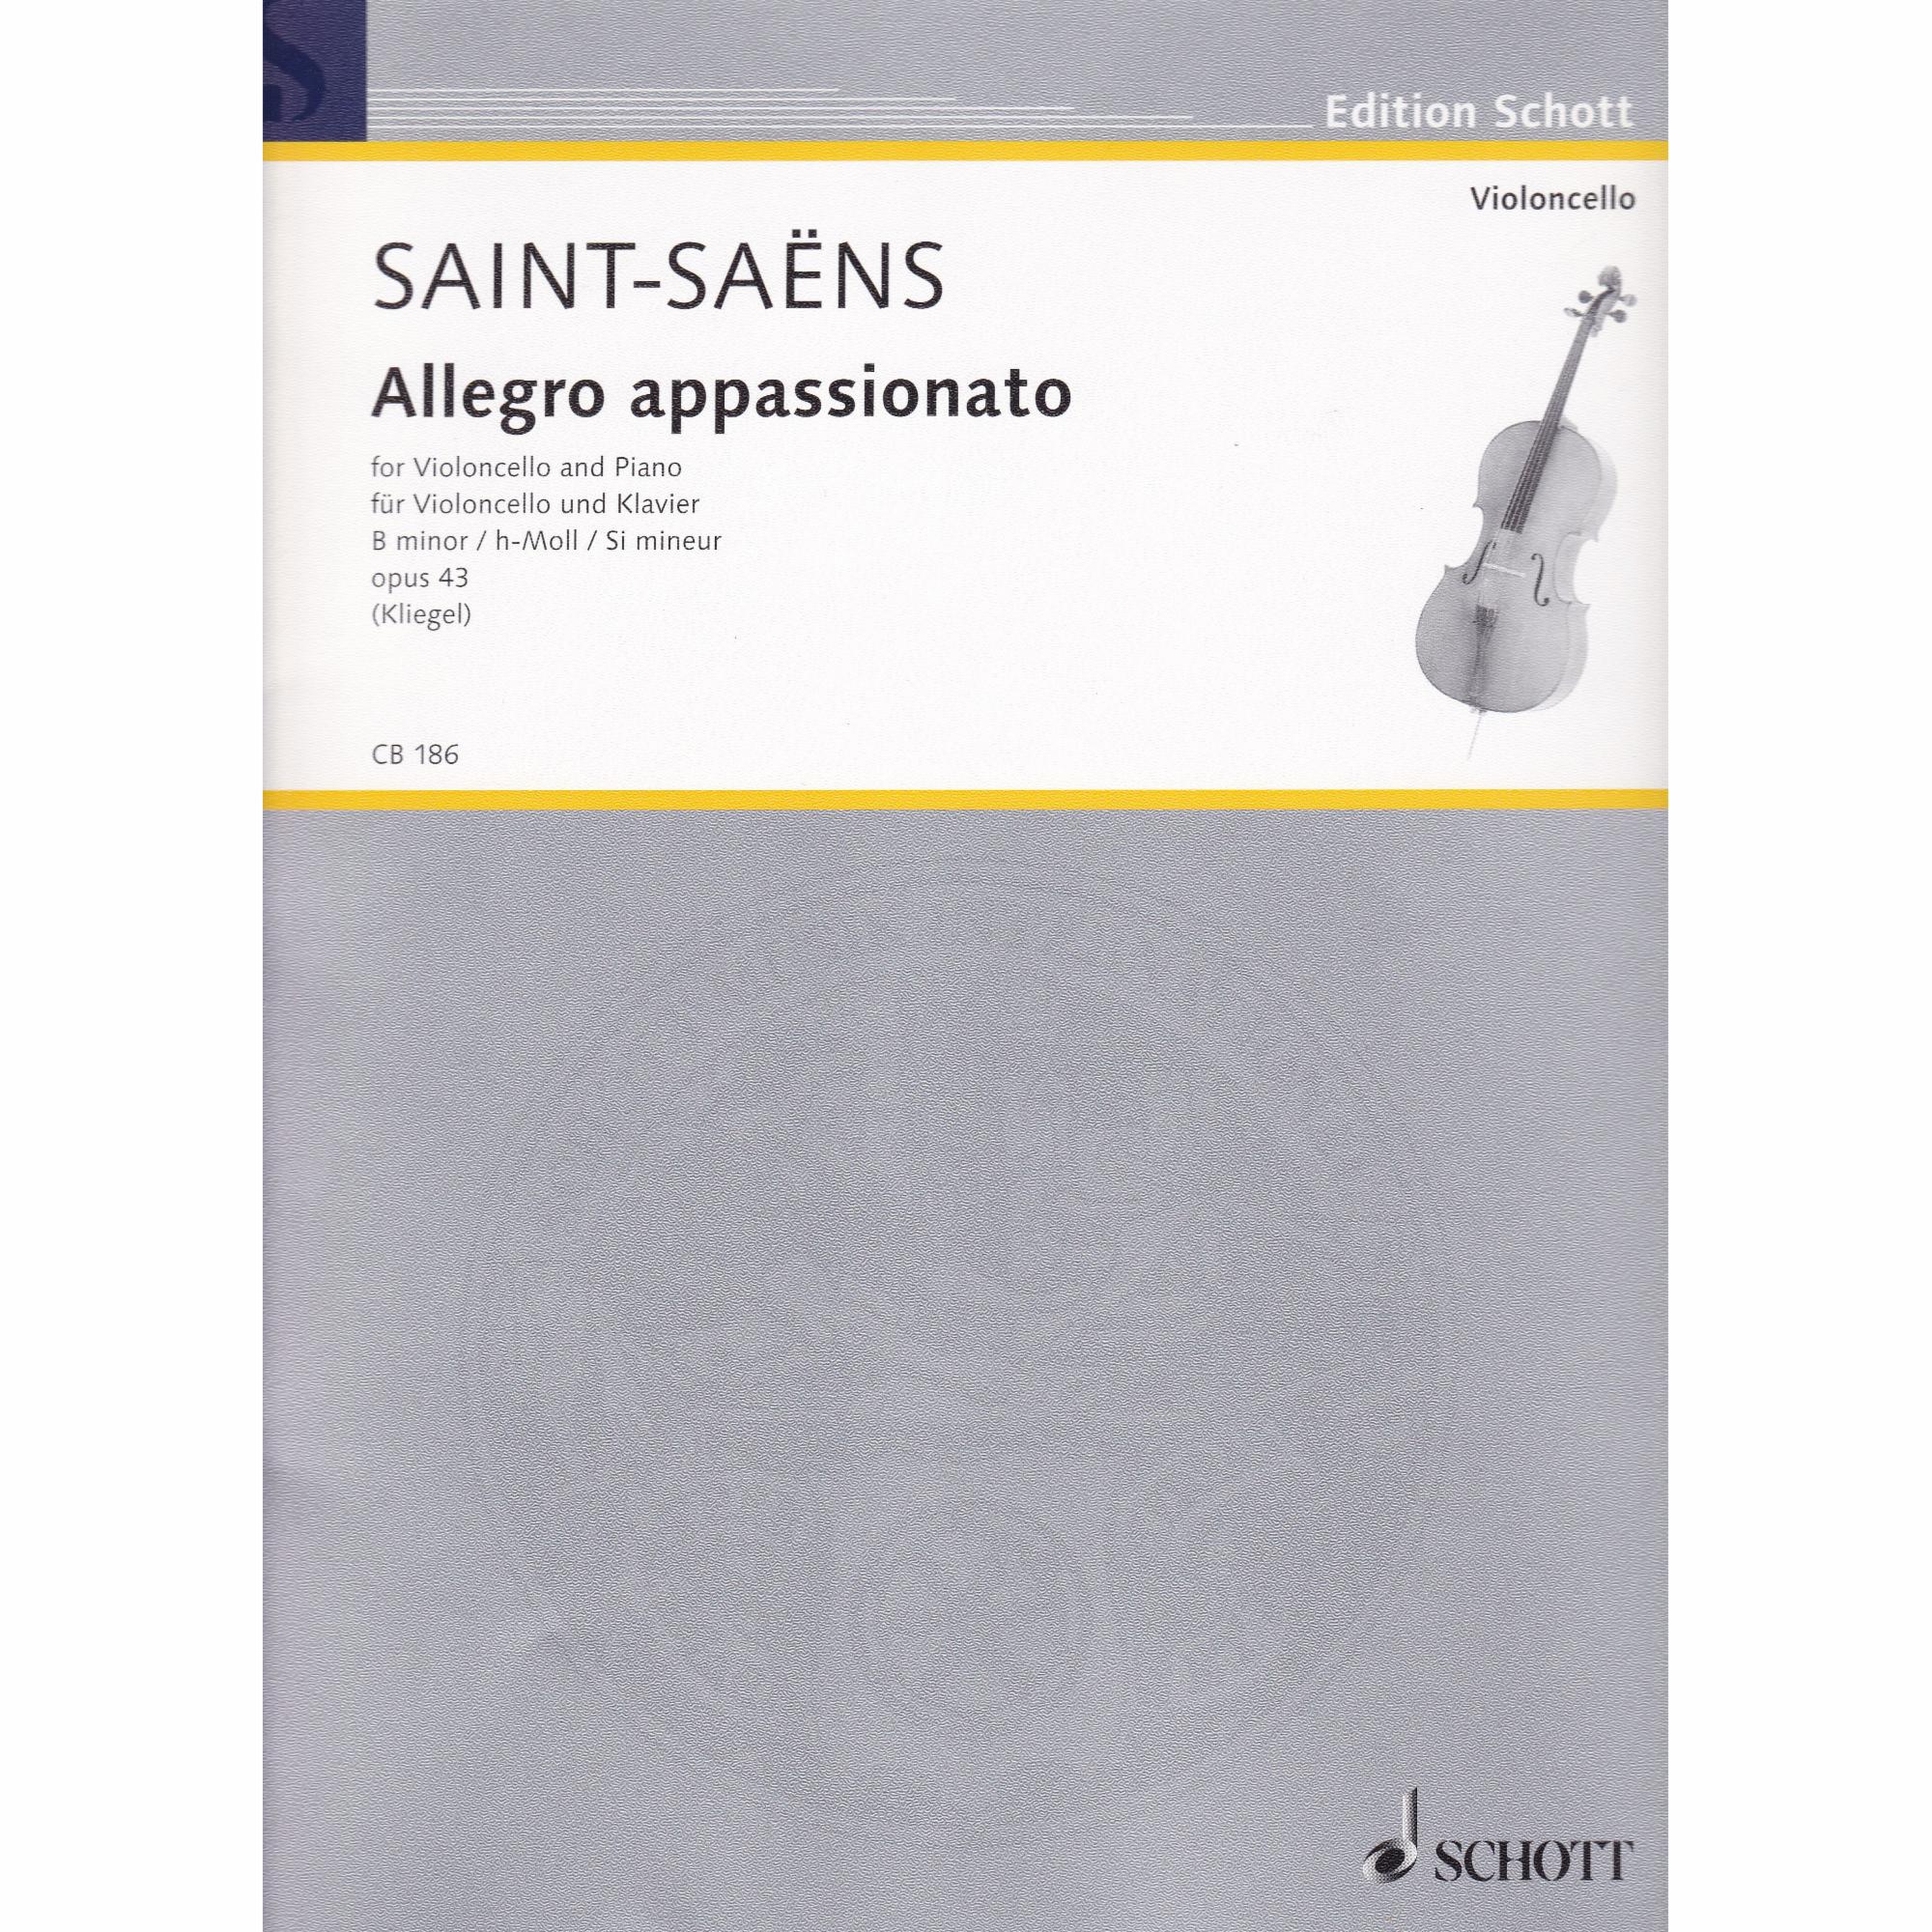 Allegro Appassionato for Cello and Piano, Op. 43